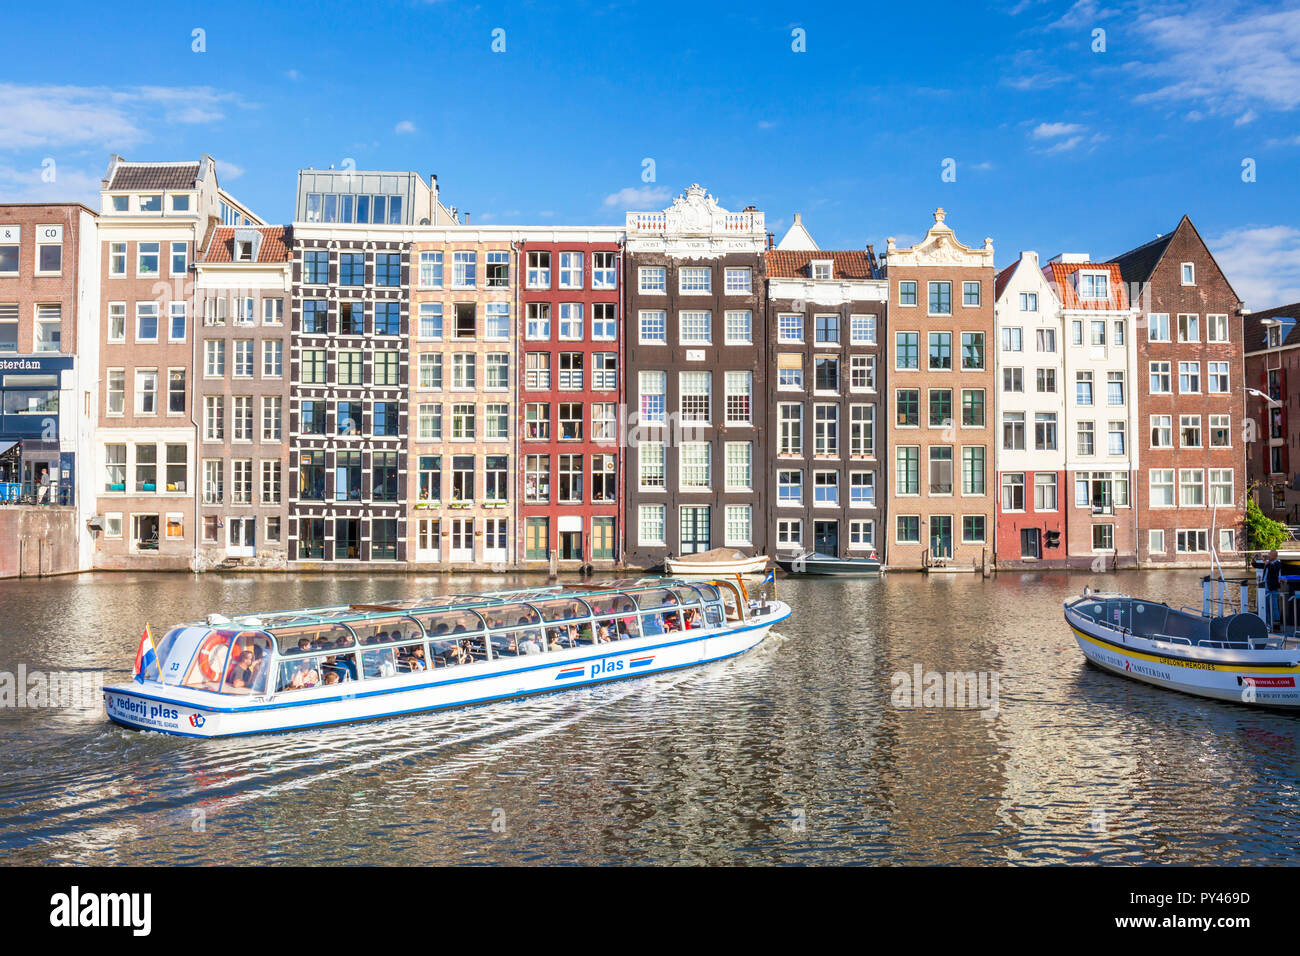 Maisons sur le Damrak Amsterdam maisons avec l'architecture néerlandaise par le canal Le canal bateau croisière à quitter le Damrak Amsterdam Hollande Pays-bas eu Europe Banque D'Images